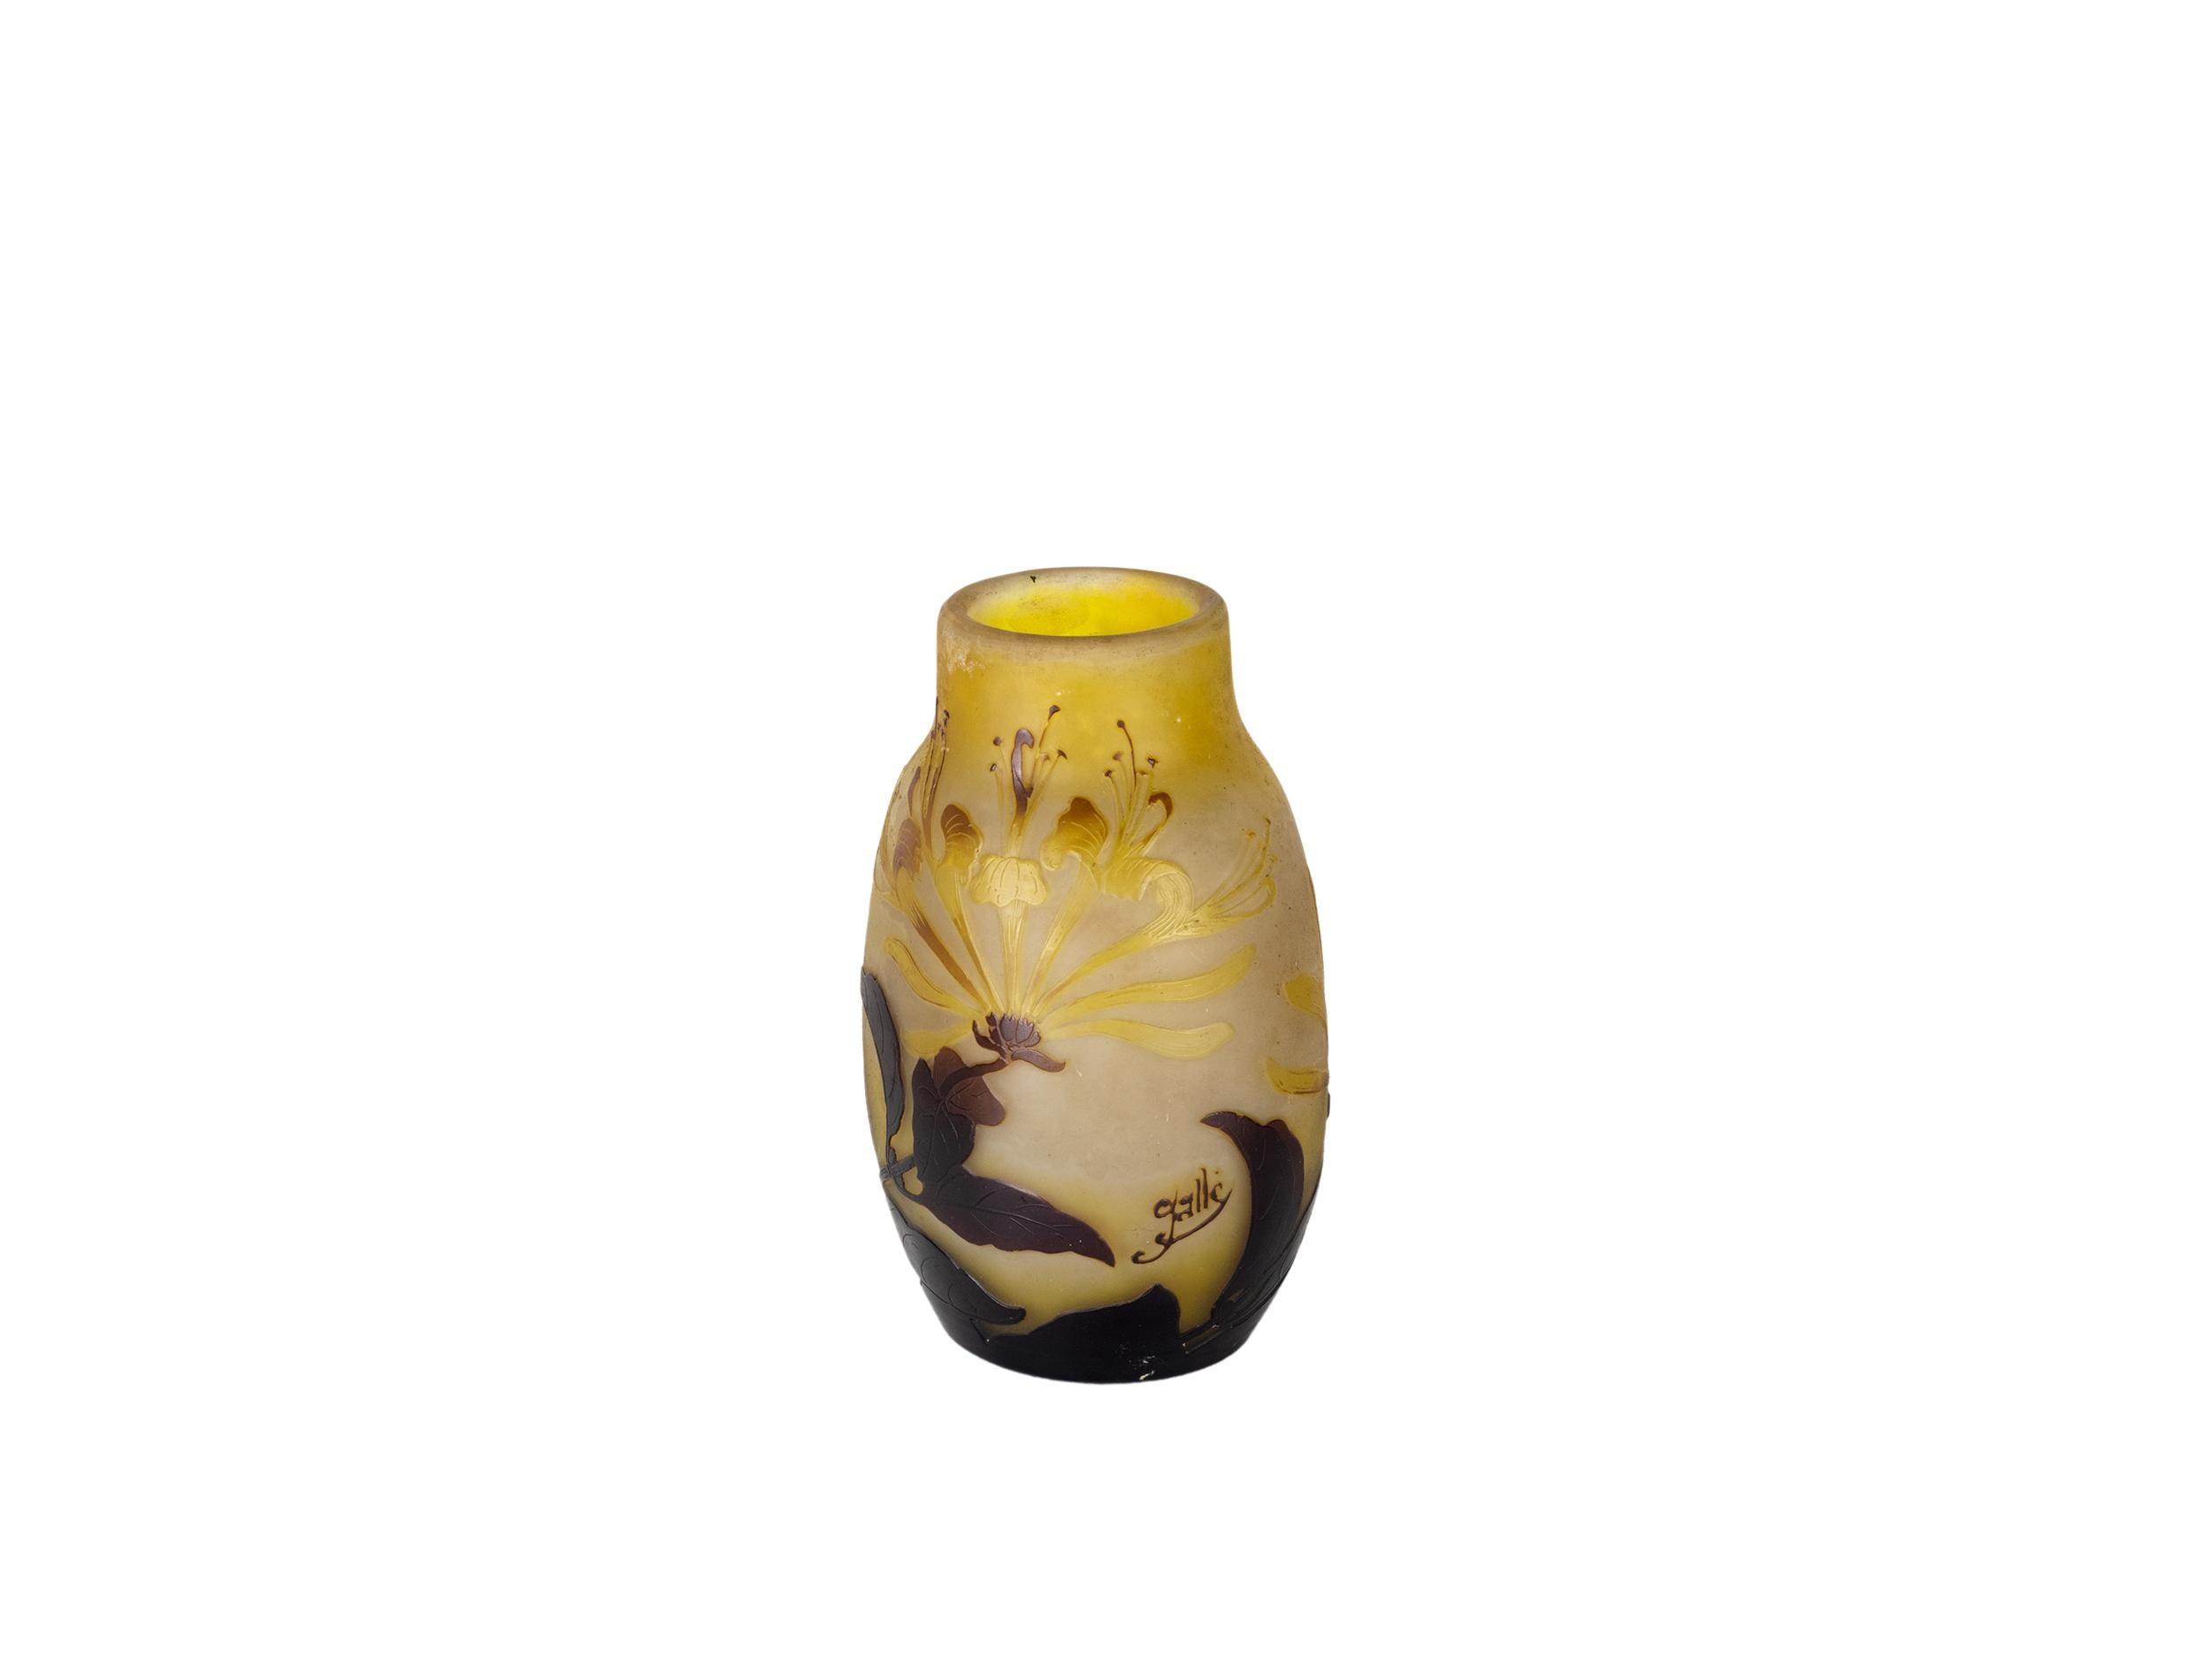 Impressionnant vase Art Nouveau Emile Galle Camée paysage, à fond jaune et détails bruns incrustés, végétation aquatique et tonalité automnale. 
Représenter une magnifique fleur Fuschia dans toute sa splendeur et dans des conditions de lumière